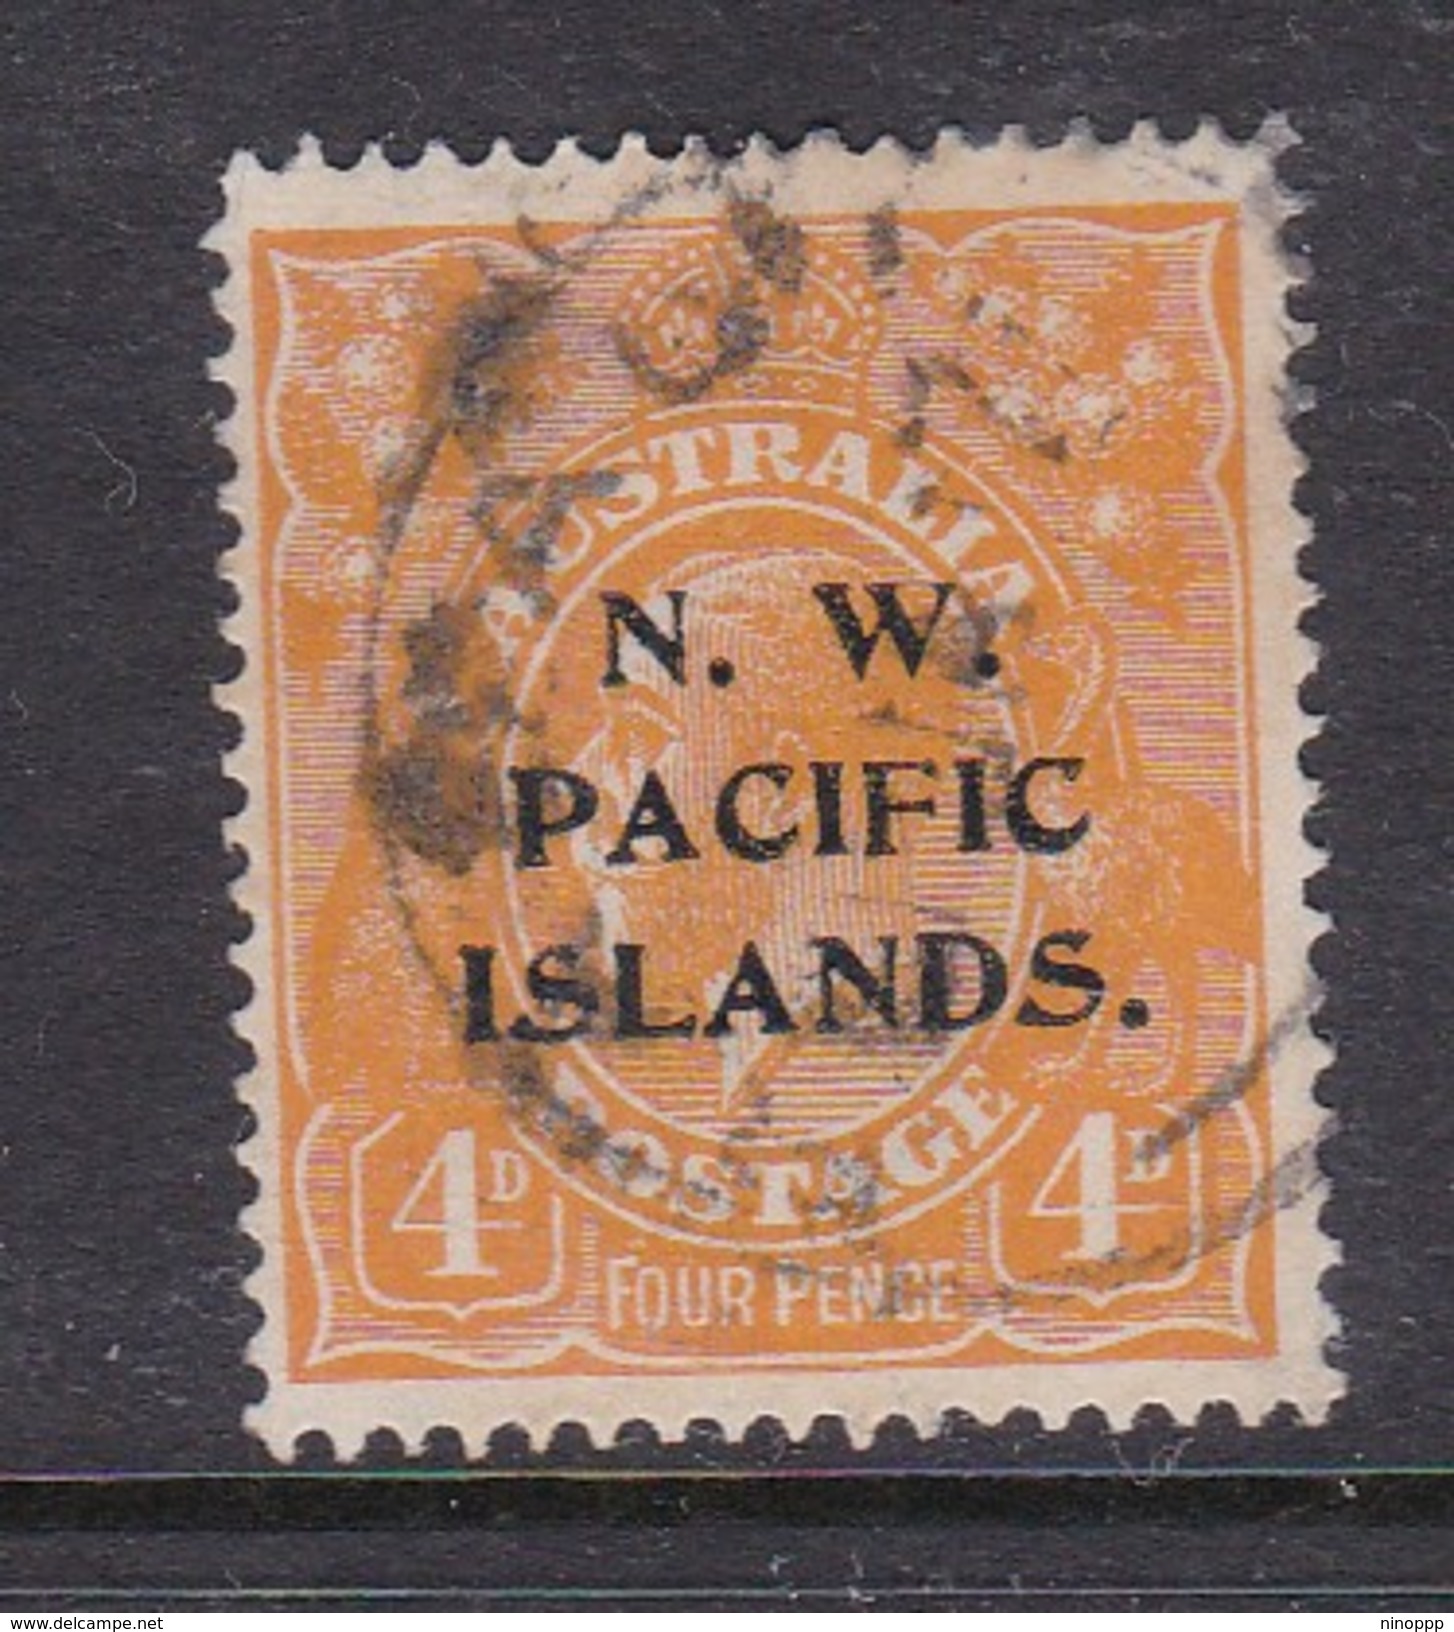 New Guinea SG 104 1919 KGV 4d Yellow-orange Used - Papua New Guinea